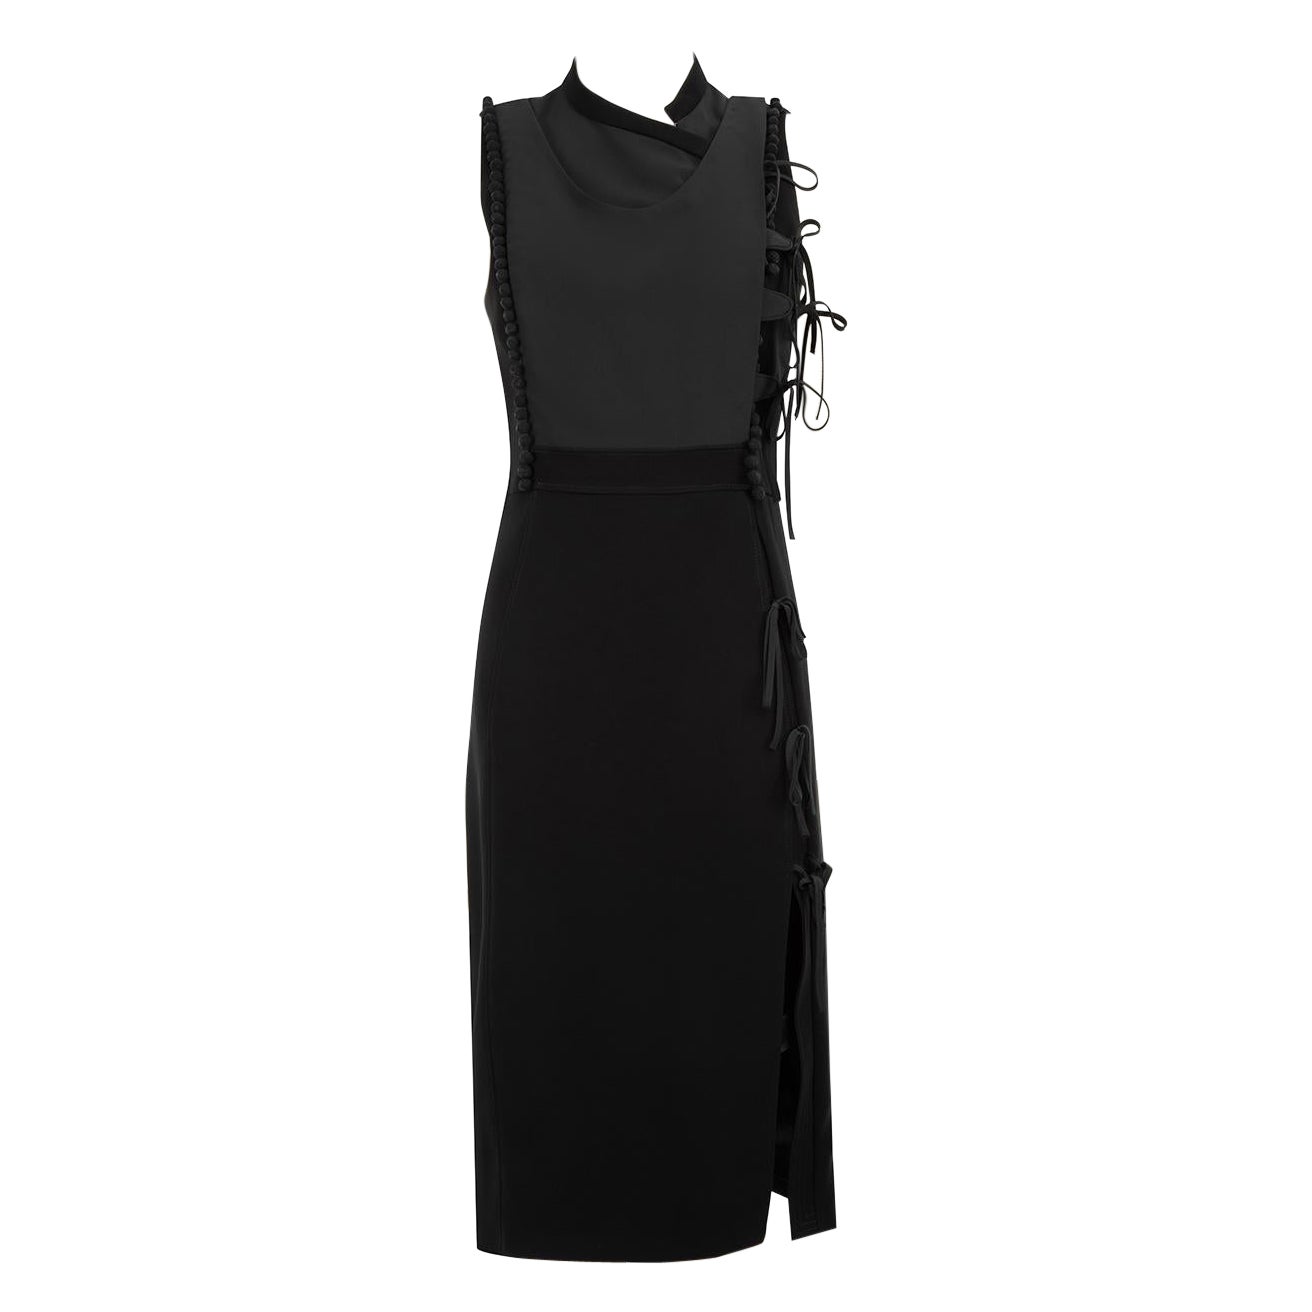 Altuzarra Black Tie Bow Accent Midi Dress Size L For Sale